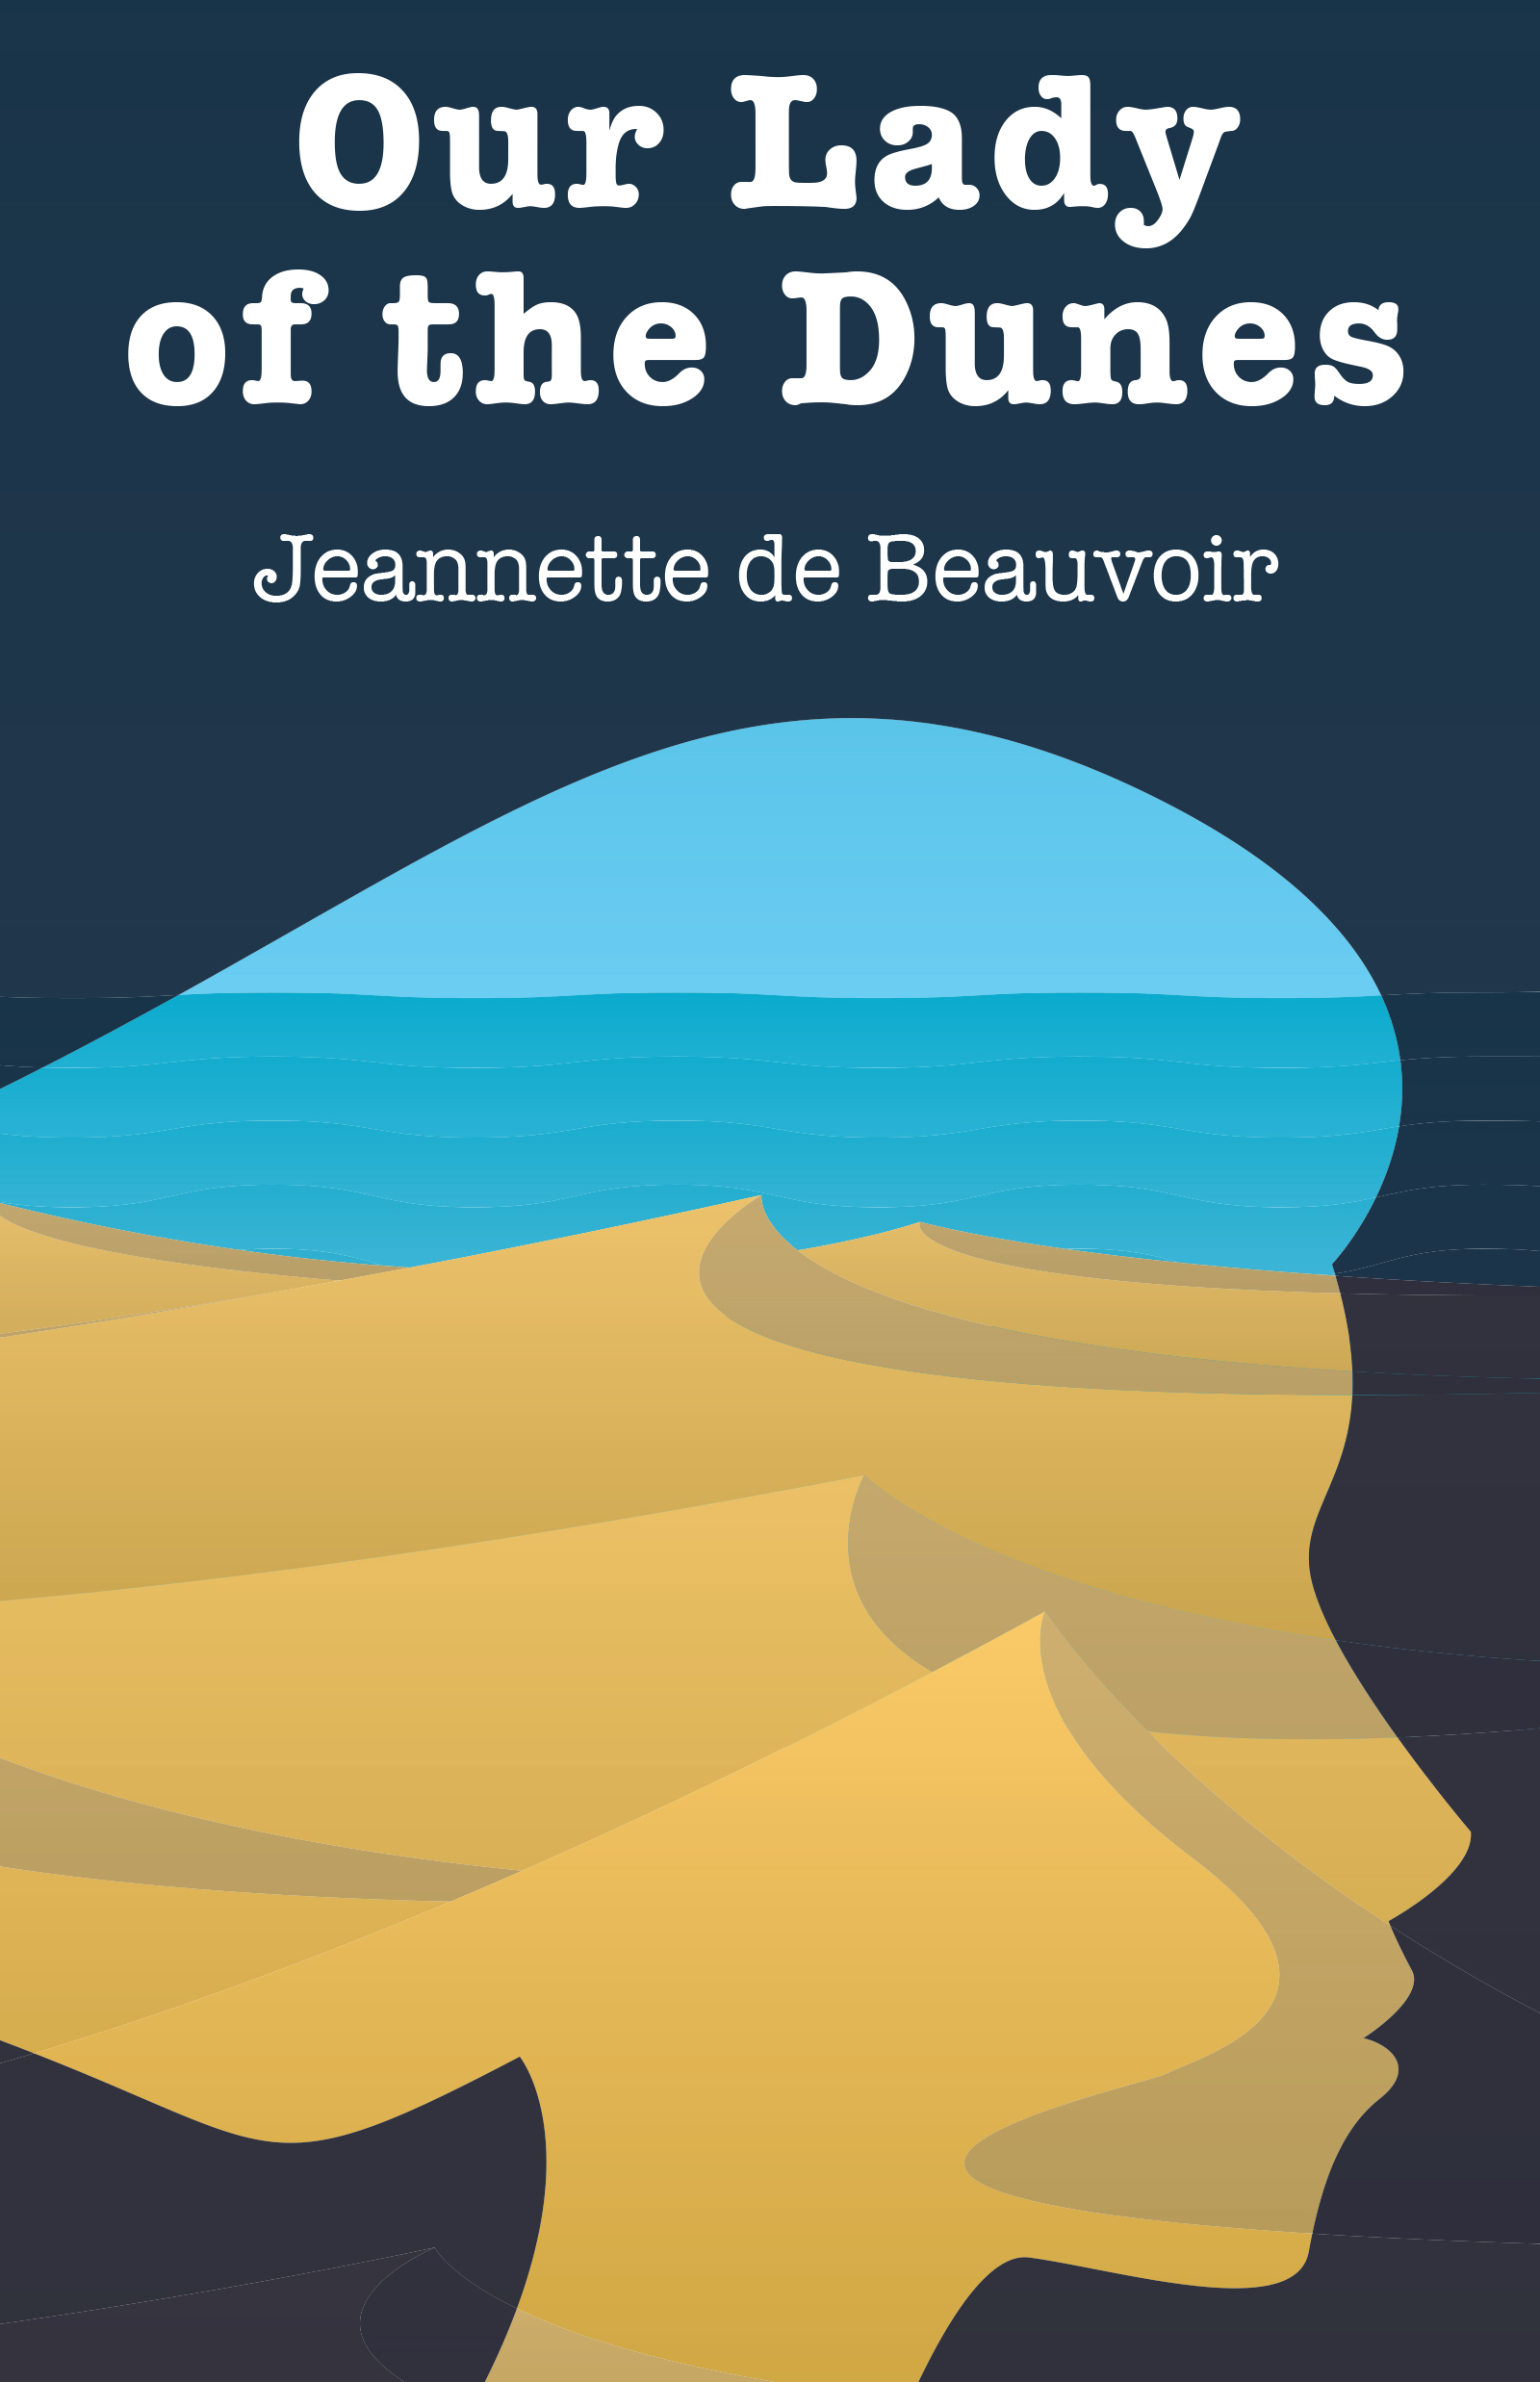 Jeannette de Beauvoir